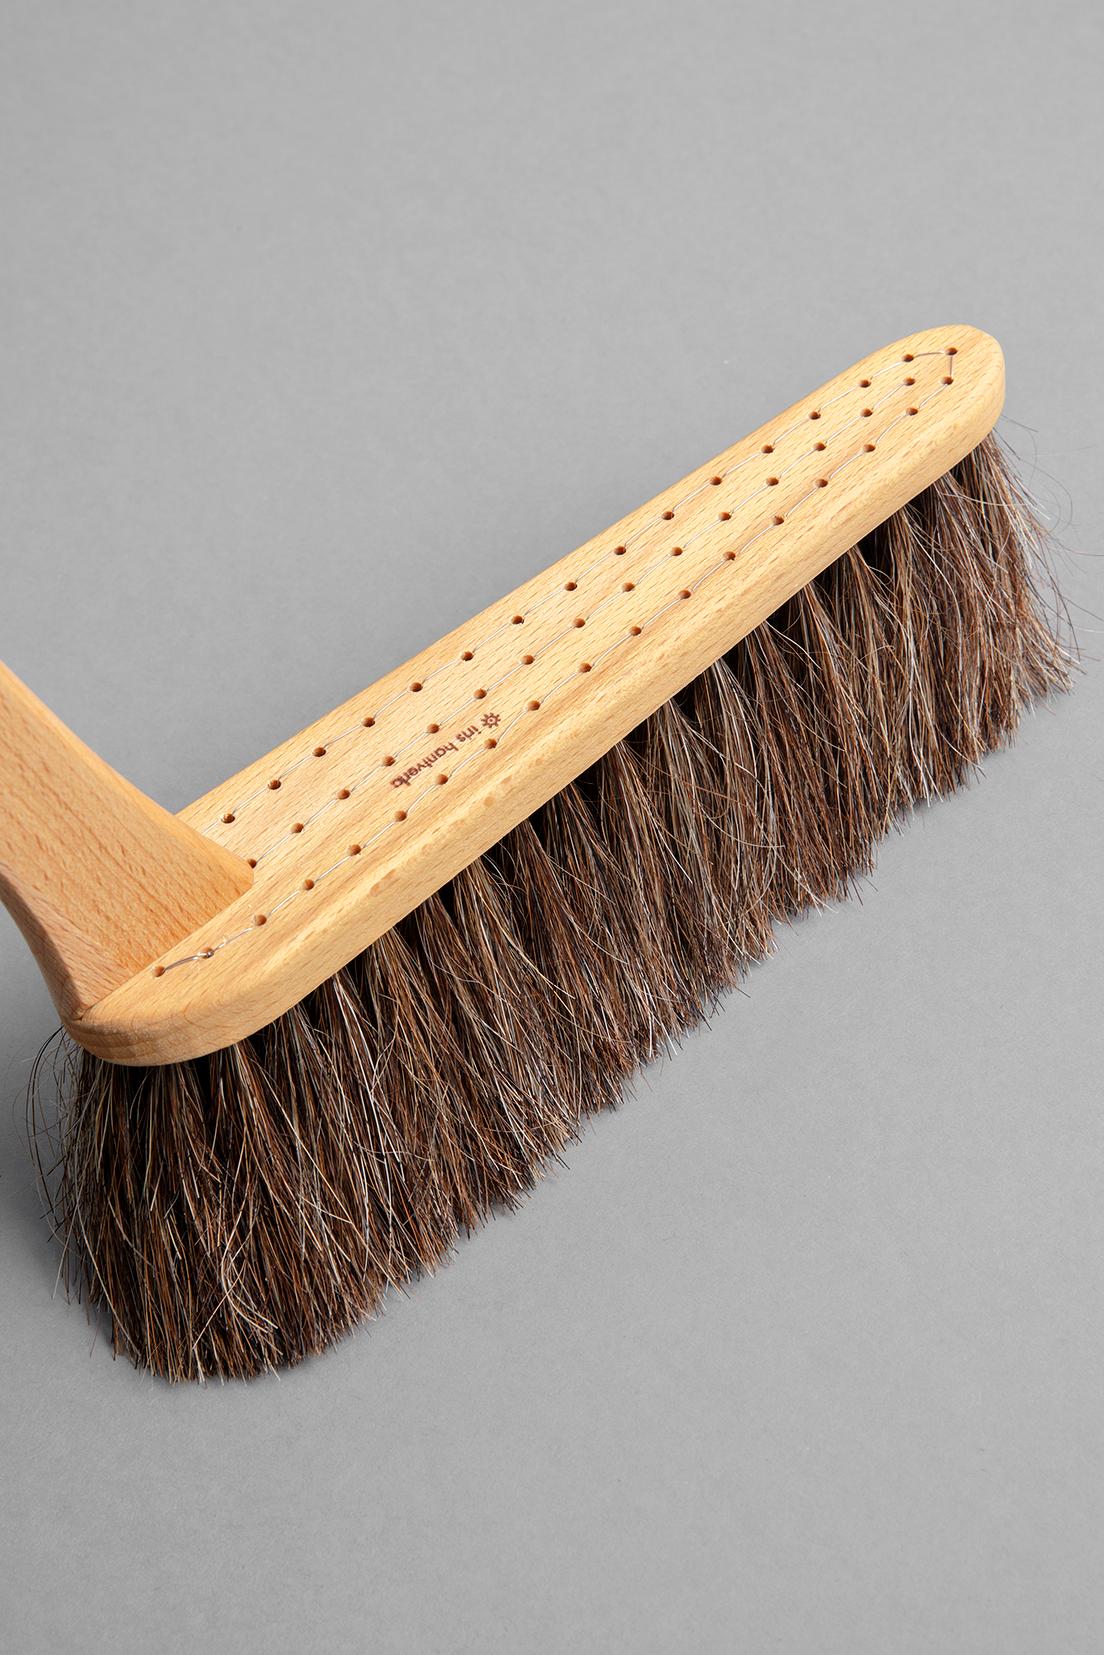 耐嚼的马毛可以干净渺小的尘土而不破坏地板。 因为发束是一根一根的手工栽种在带孔的树体上，是以头发不易脱落，可以舒适地永远应用，这很有吸引力。